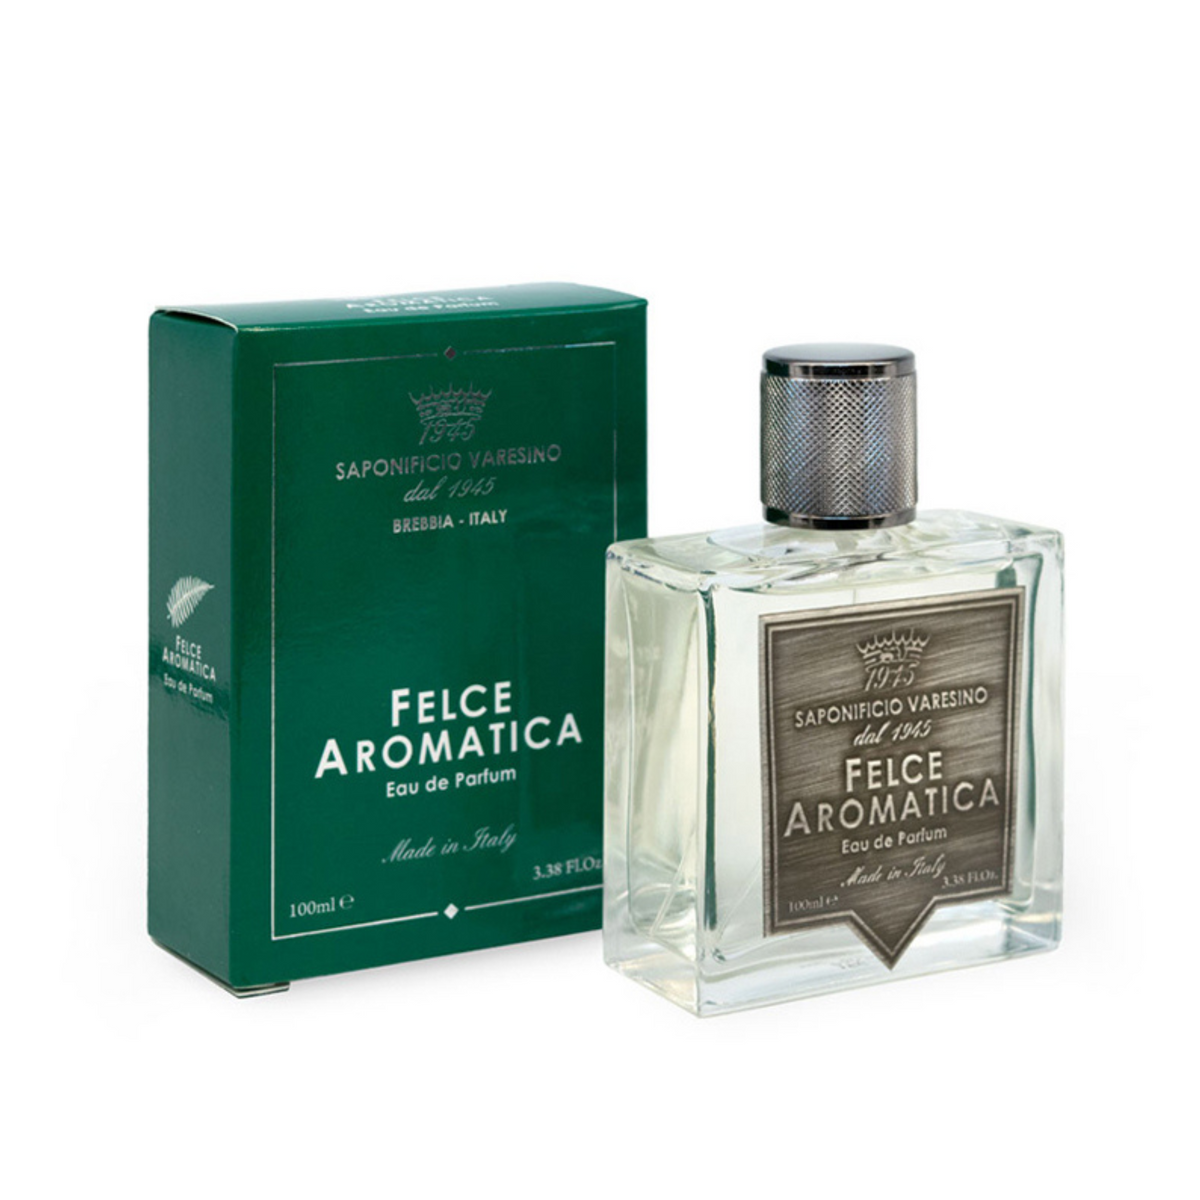 Primary Image of Felce Aromatica Eau De Parfum